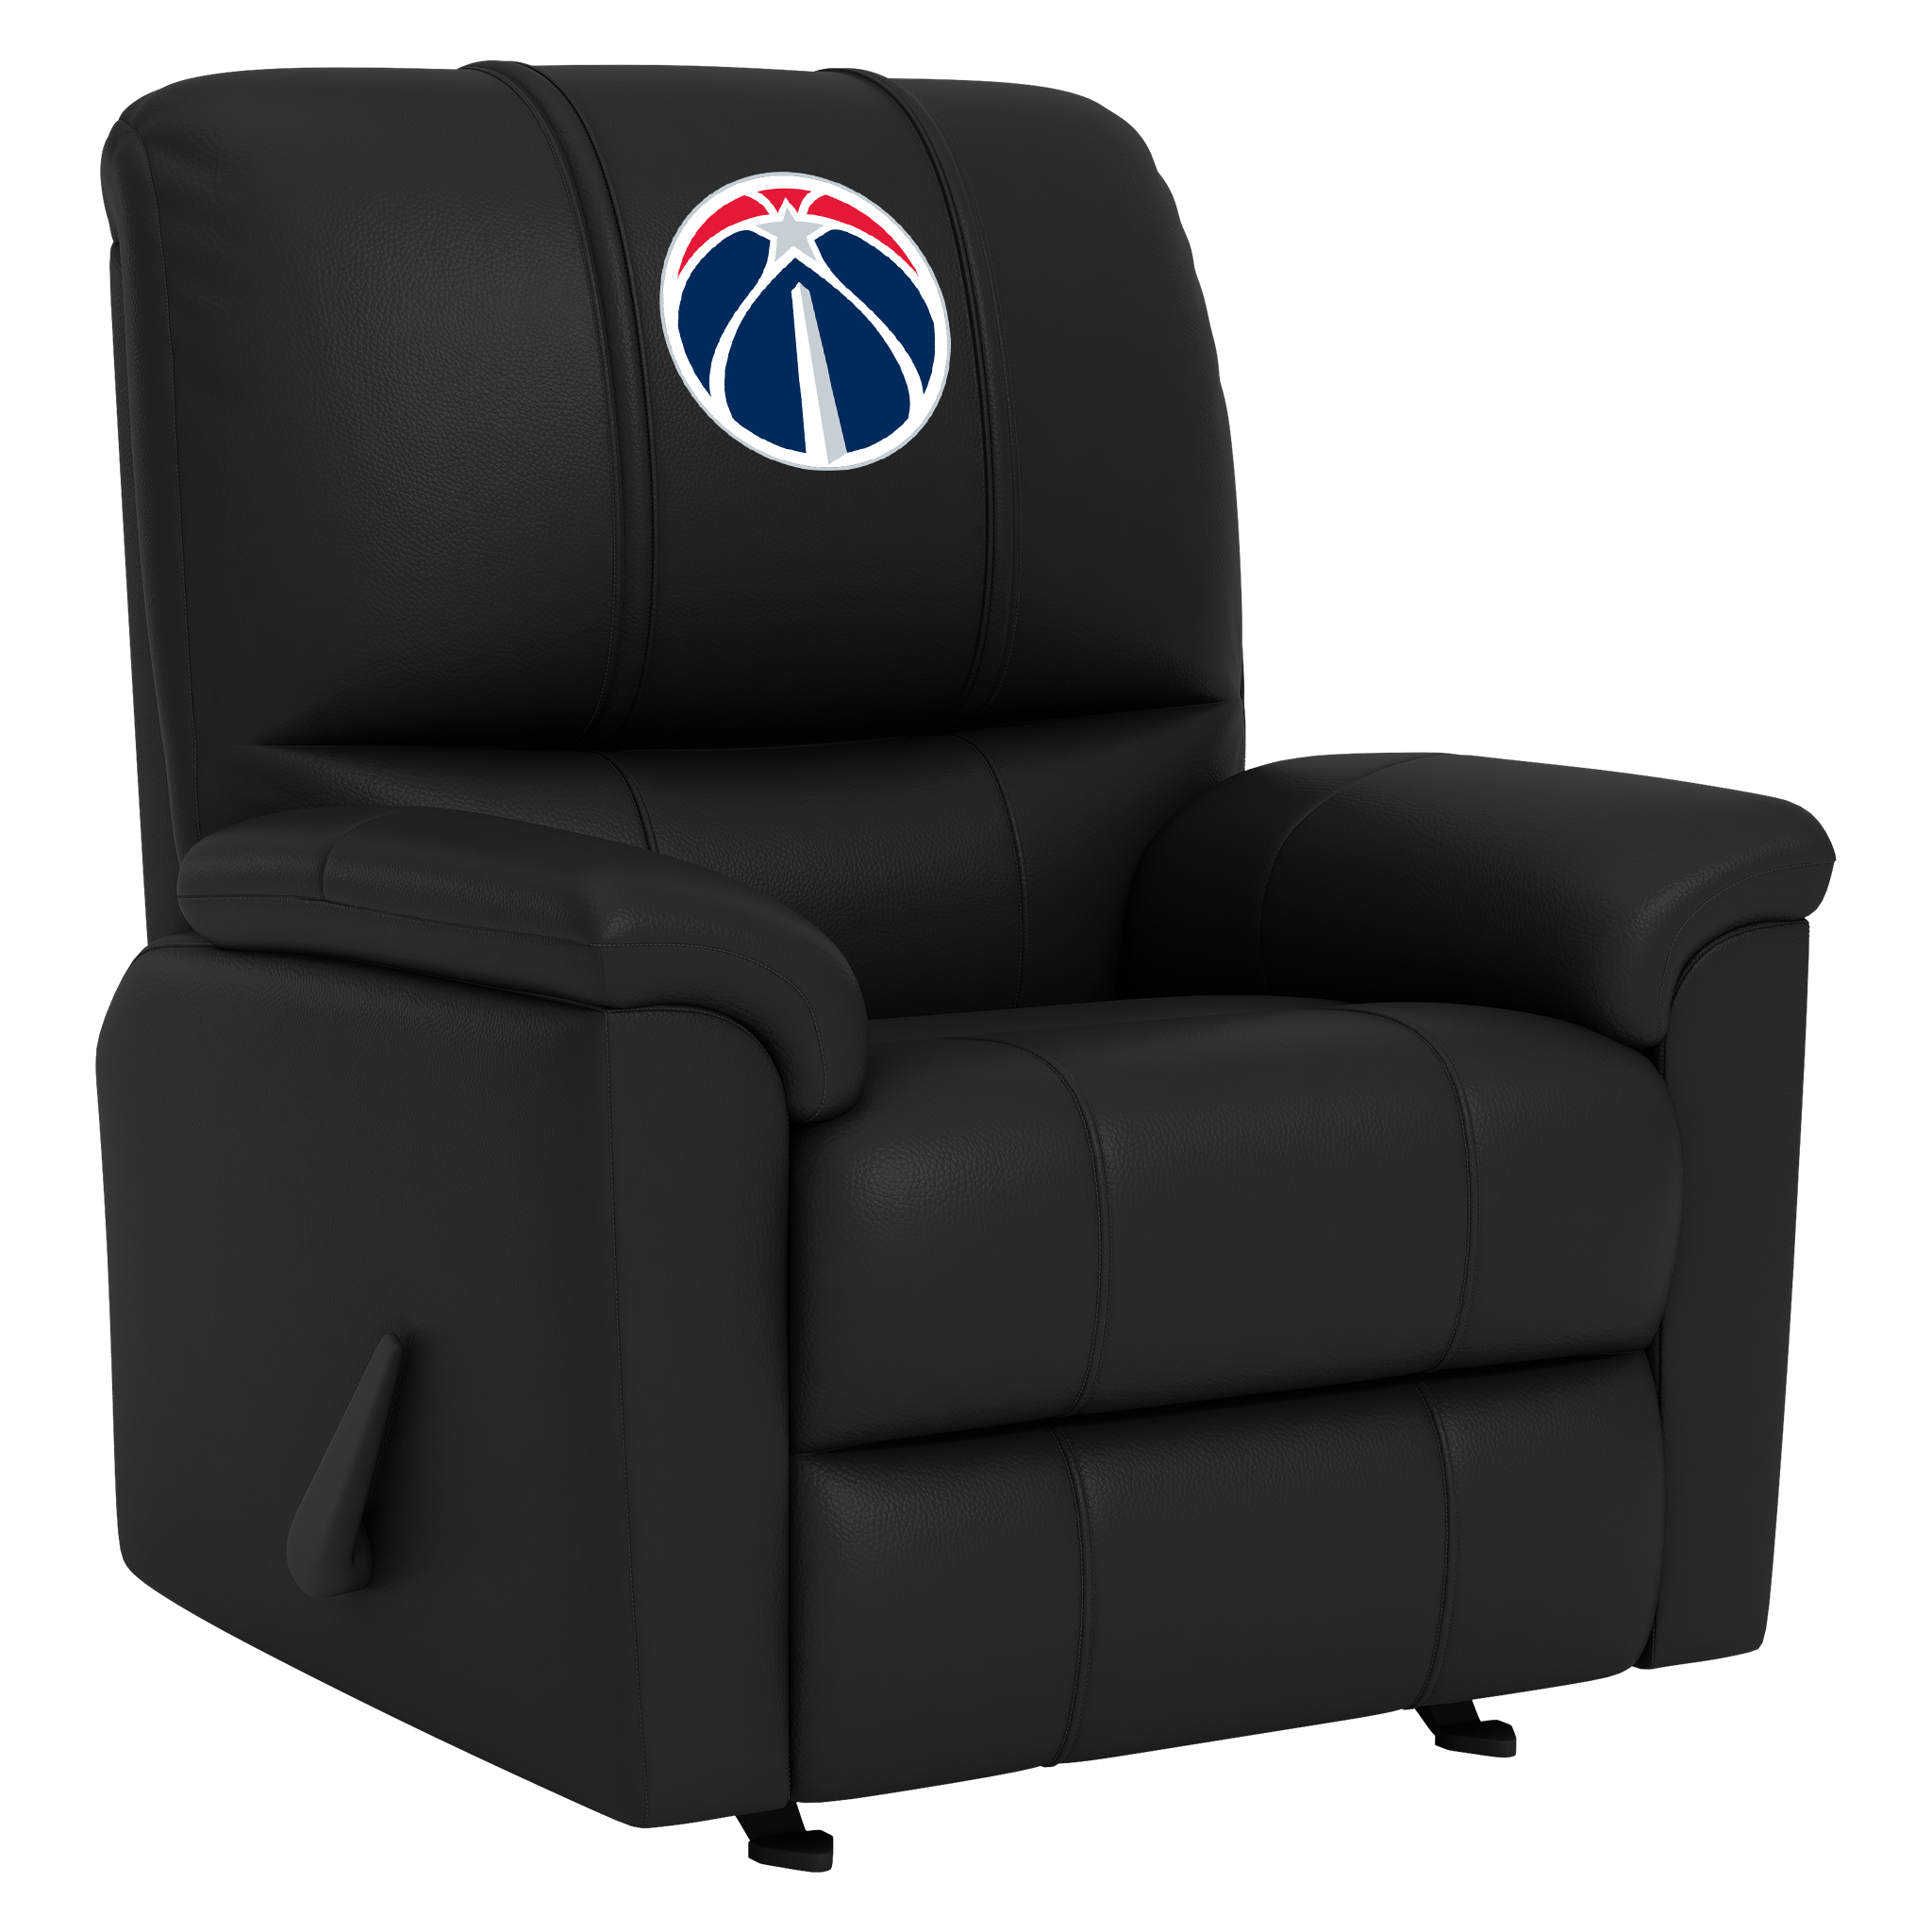 San Antonio Spurs Silver Club Chair with San Antonio Spurs Logo